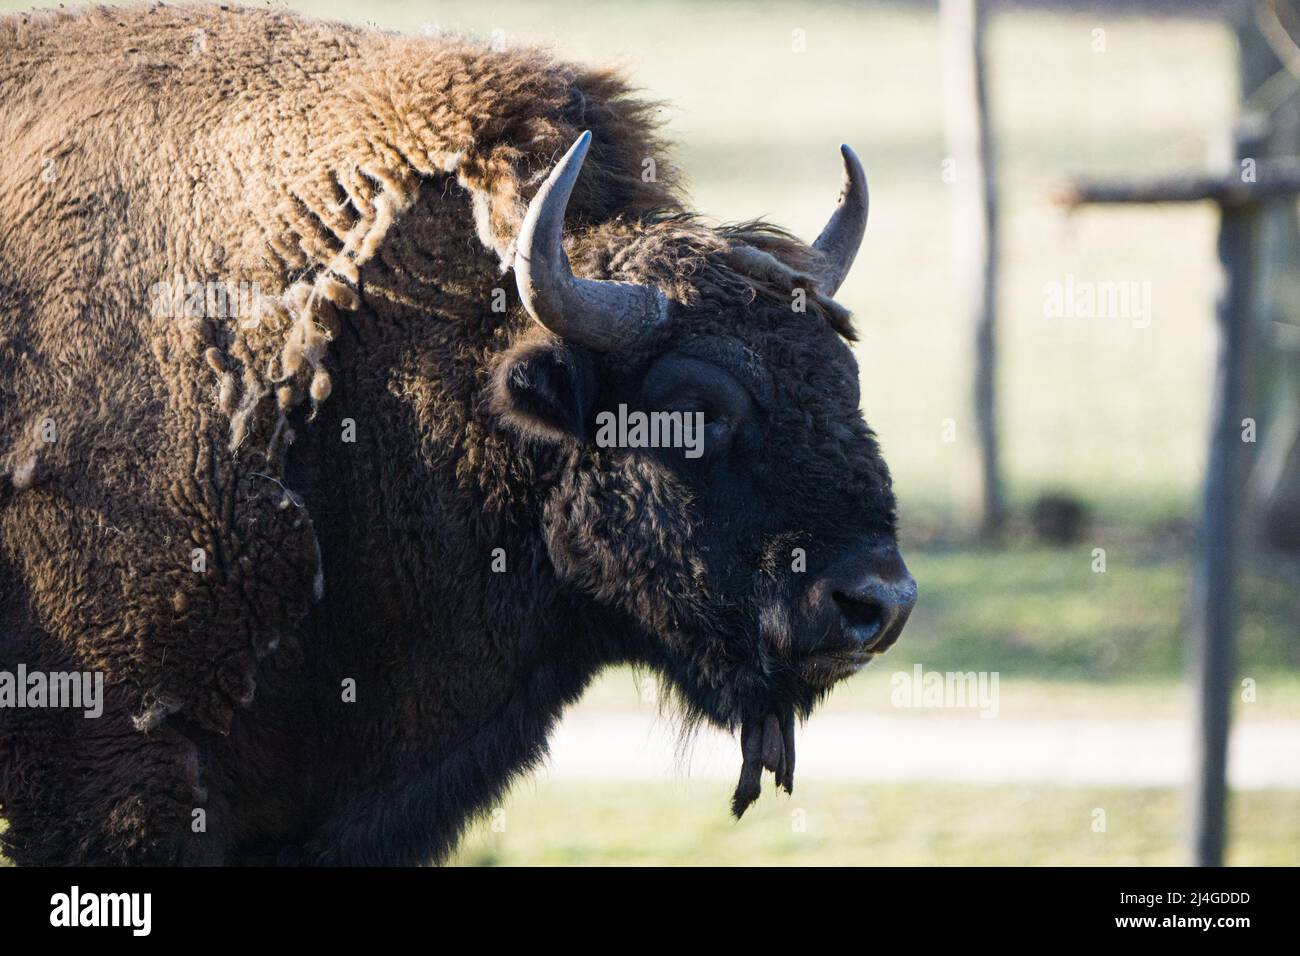 gros plan d'un bison sauvage avec de grandes cornes Banque D'Images